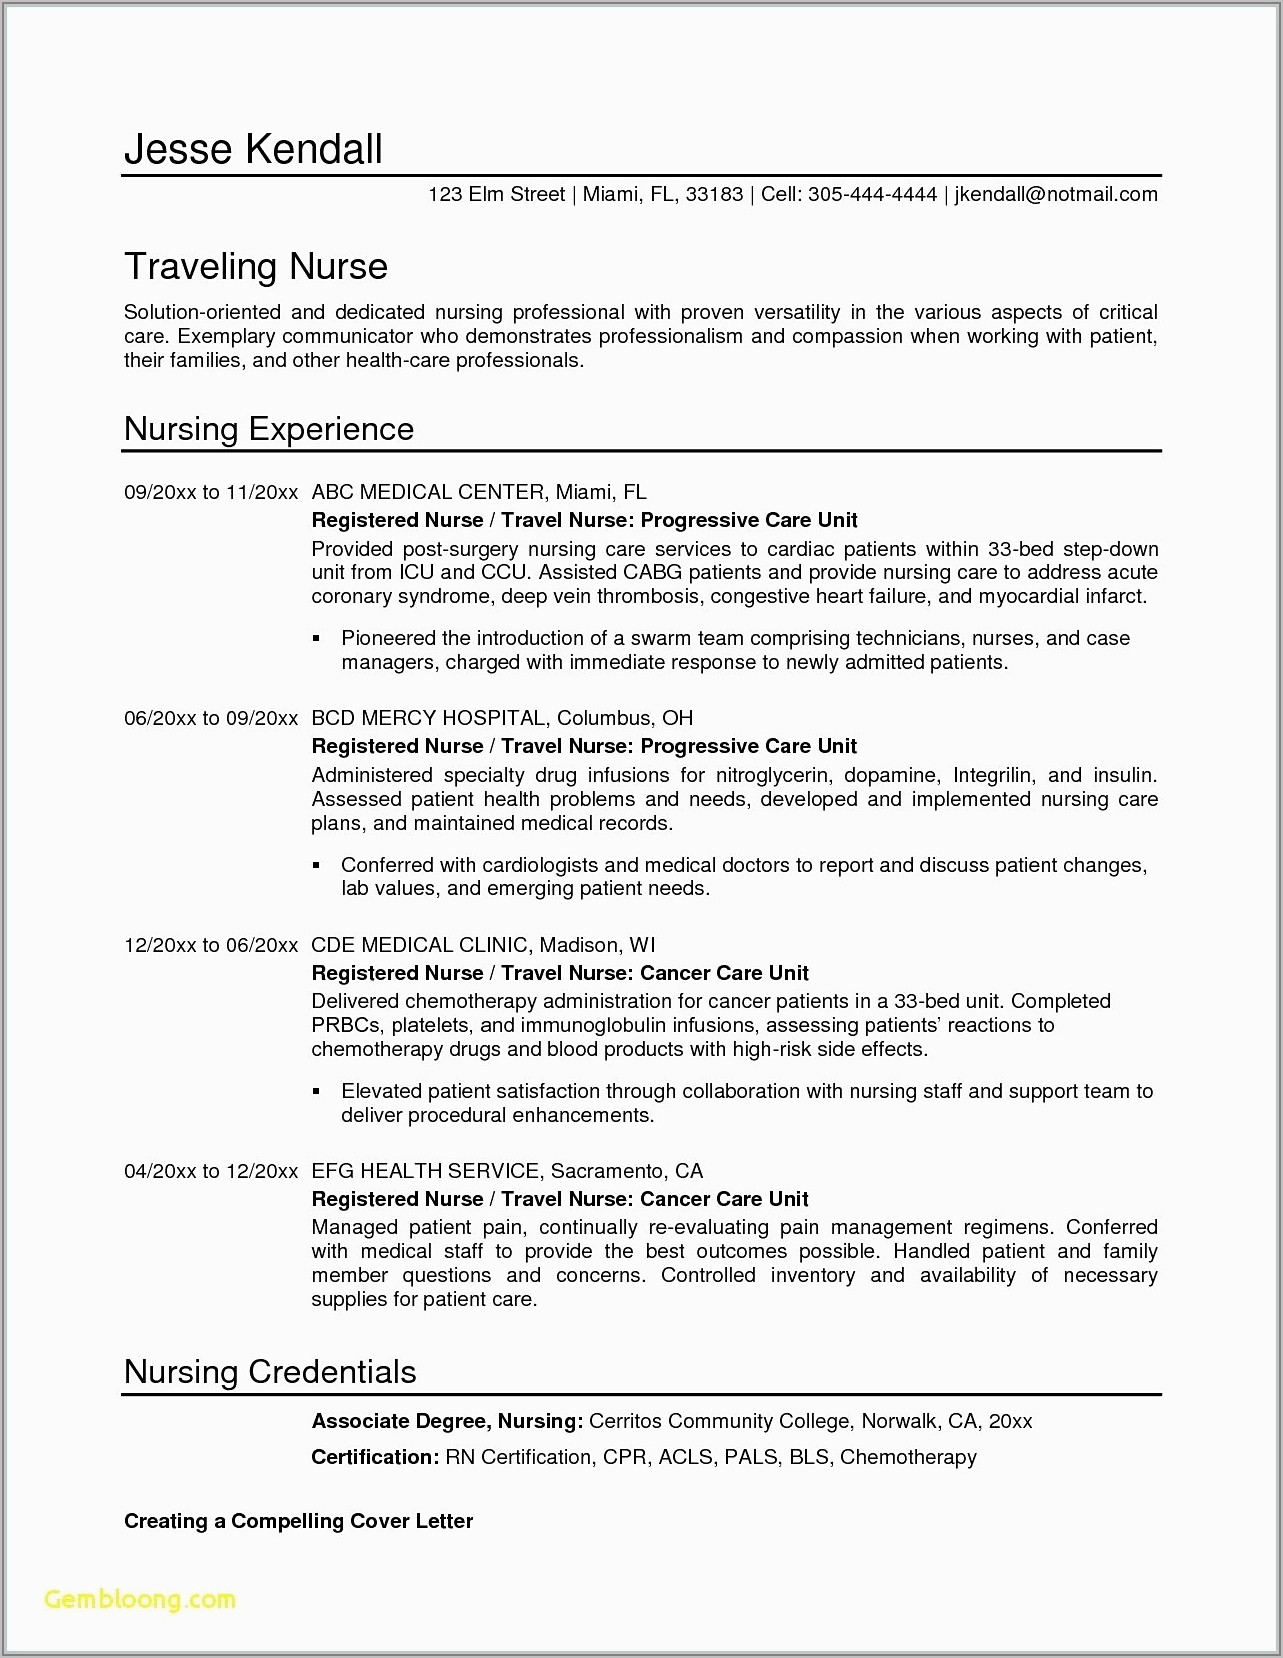 Resume Writing For Registered Nurses